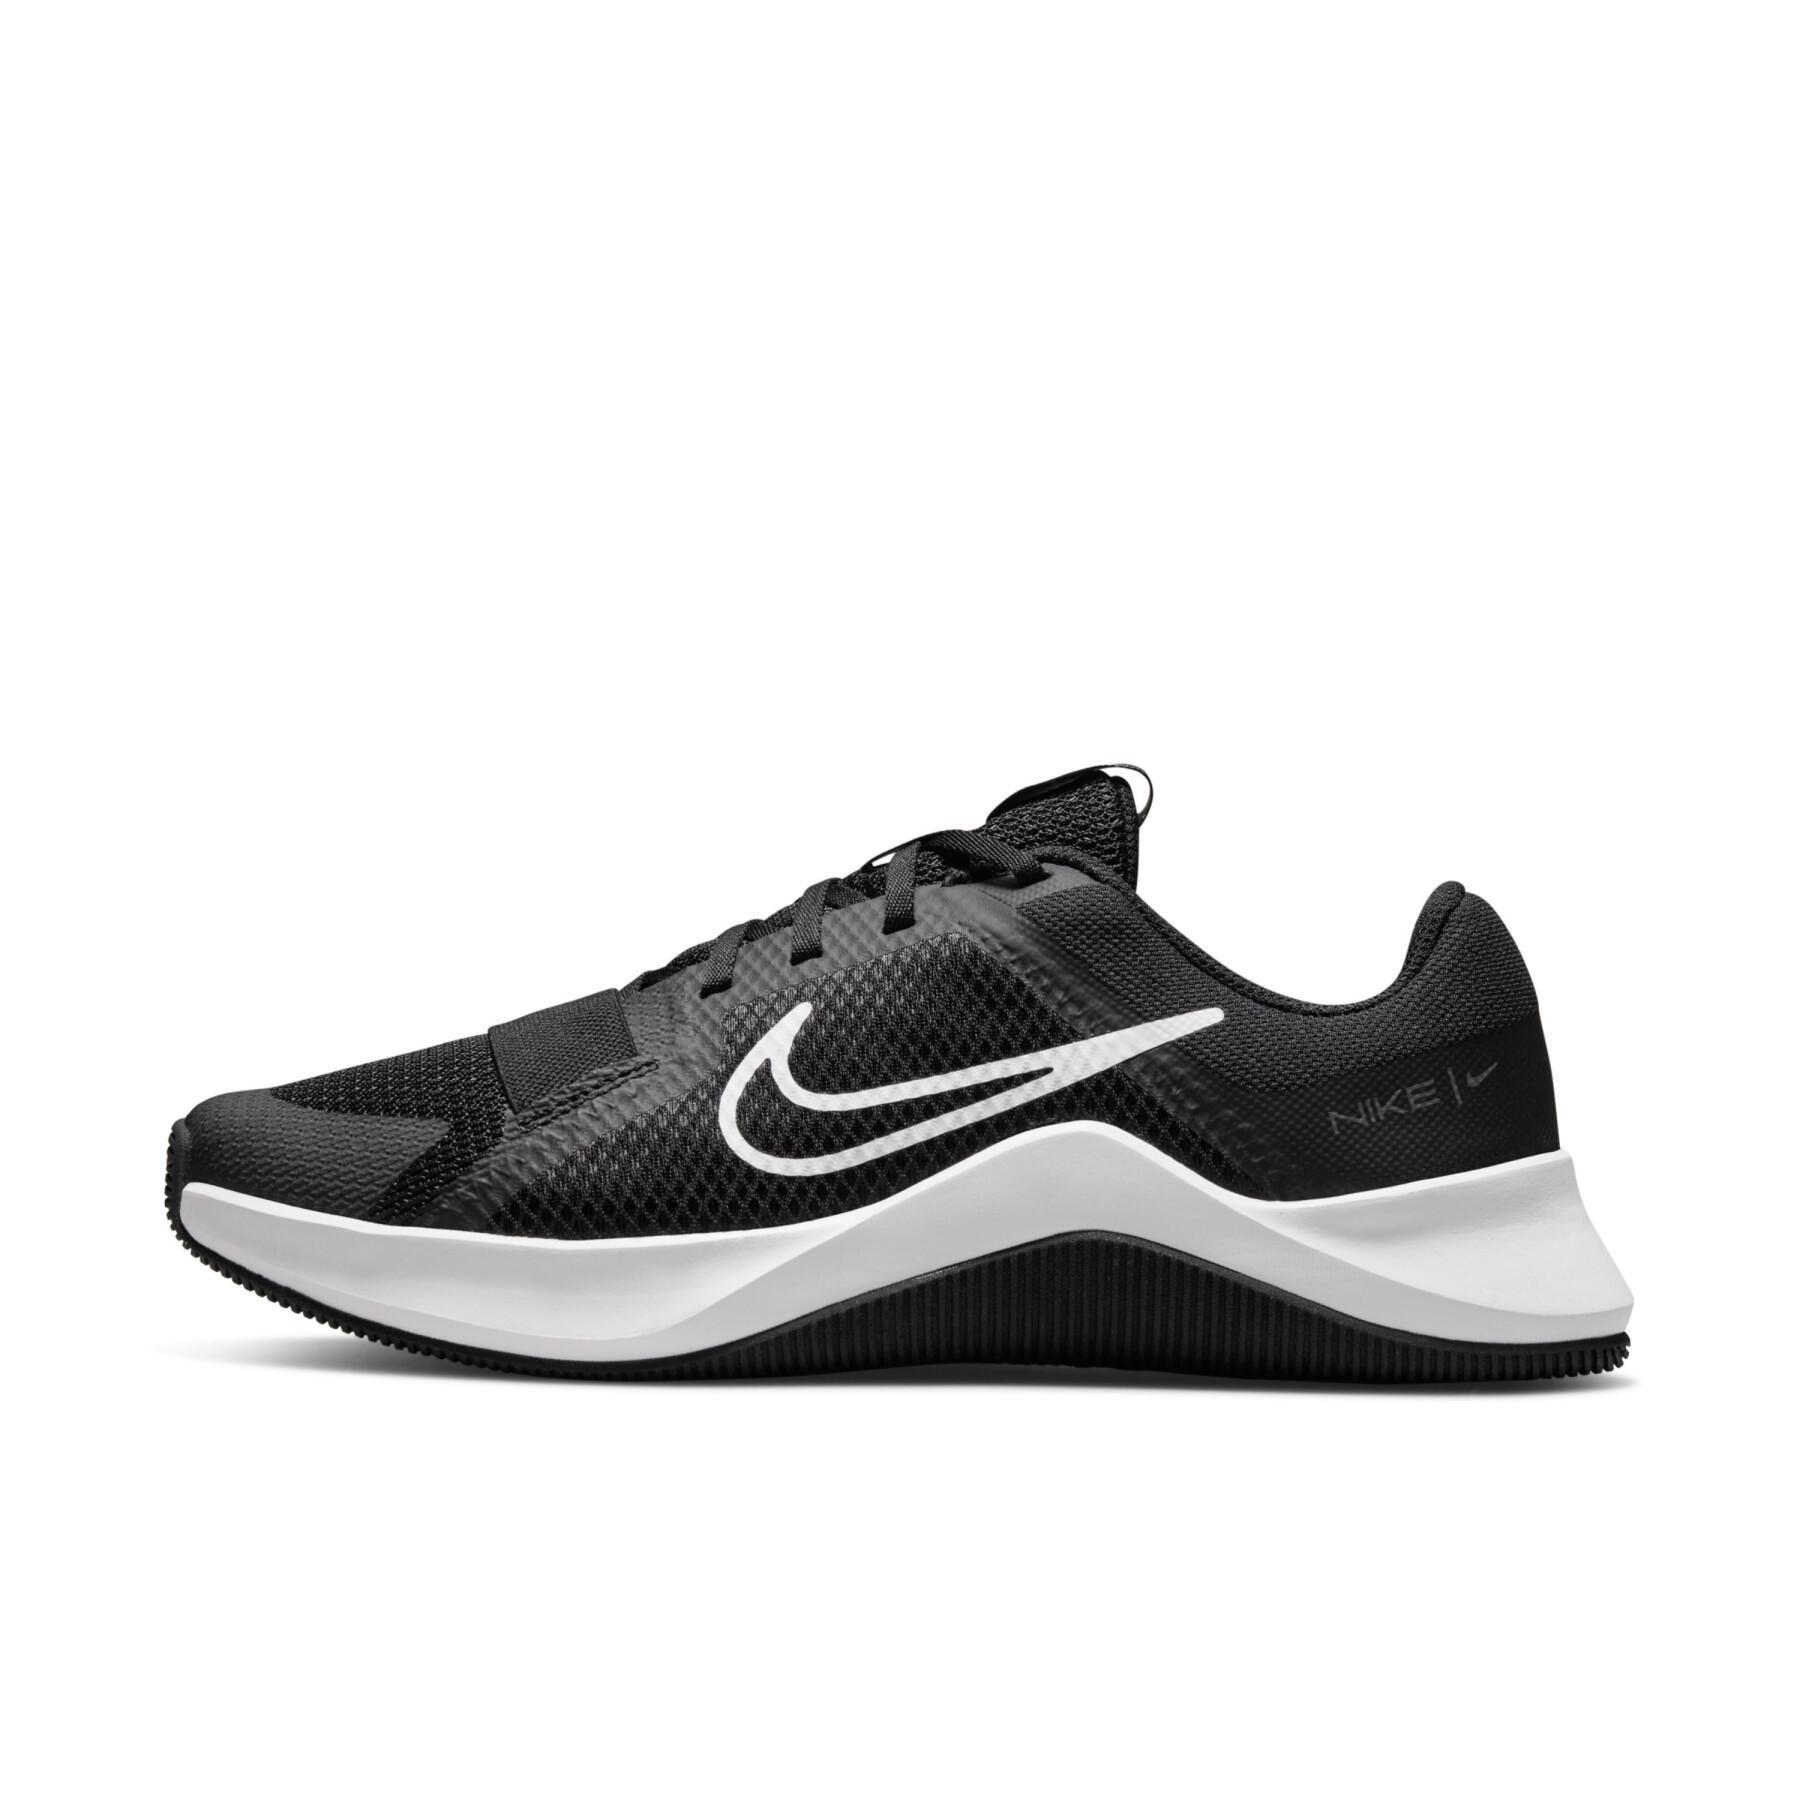 Cross-training schoenen Nike